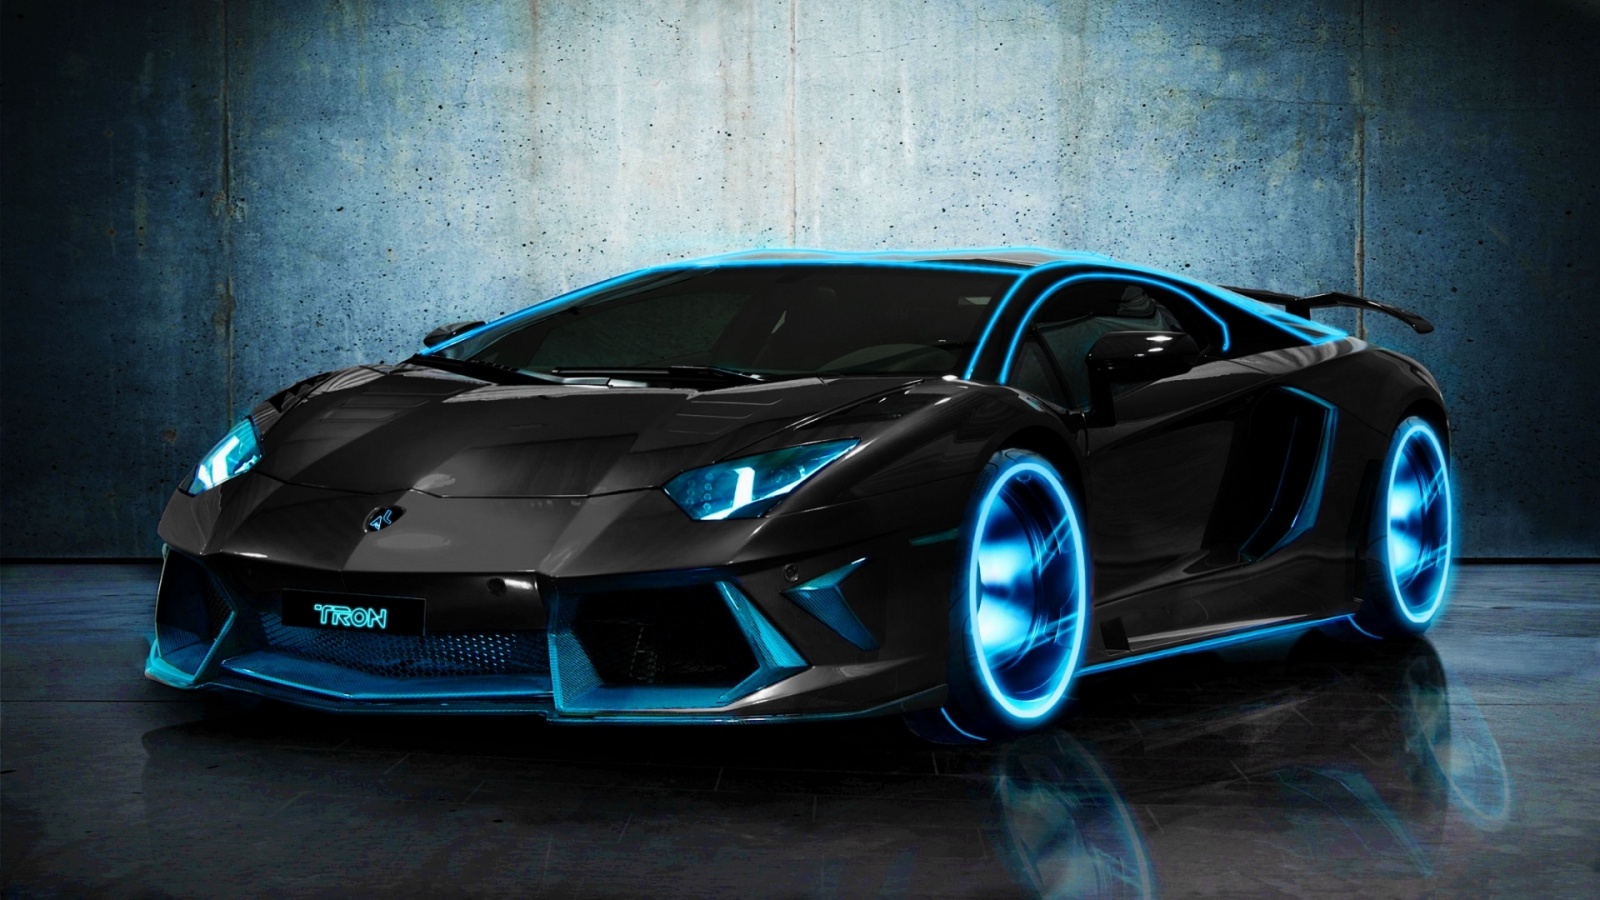 Lần này, chúng ta sẽ cùng chiêm ngưỡng bức ảnh Lamborghini Aventador đậm chất TRON. Thiết kế đầy bắt mắt và đẳng cấp, cùng với các hình ảnh rực rỡ đến từ đế chế mạng điện tử, sẽ làm bạn bị thu hút ngay từ cái nhìn đầu tiên.